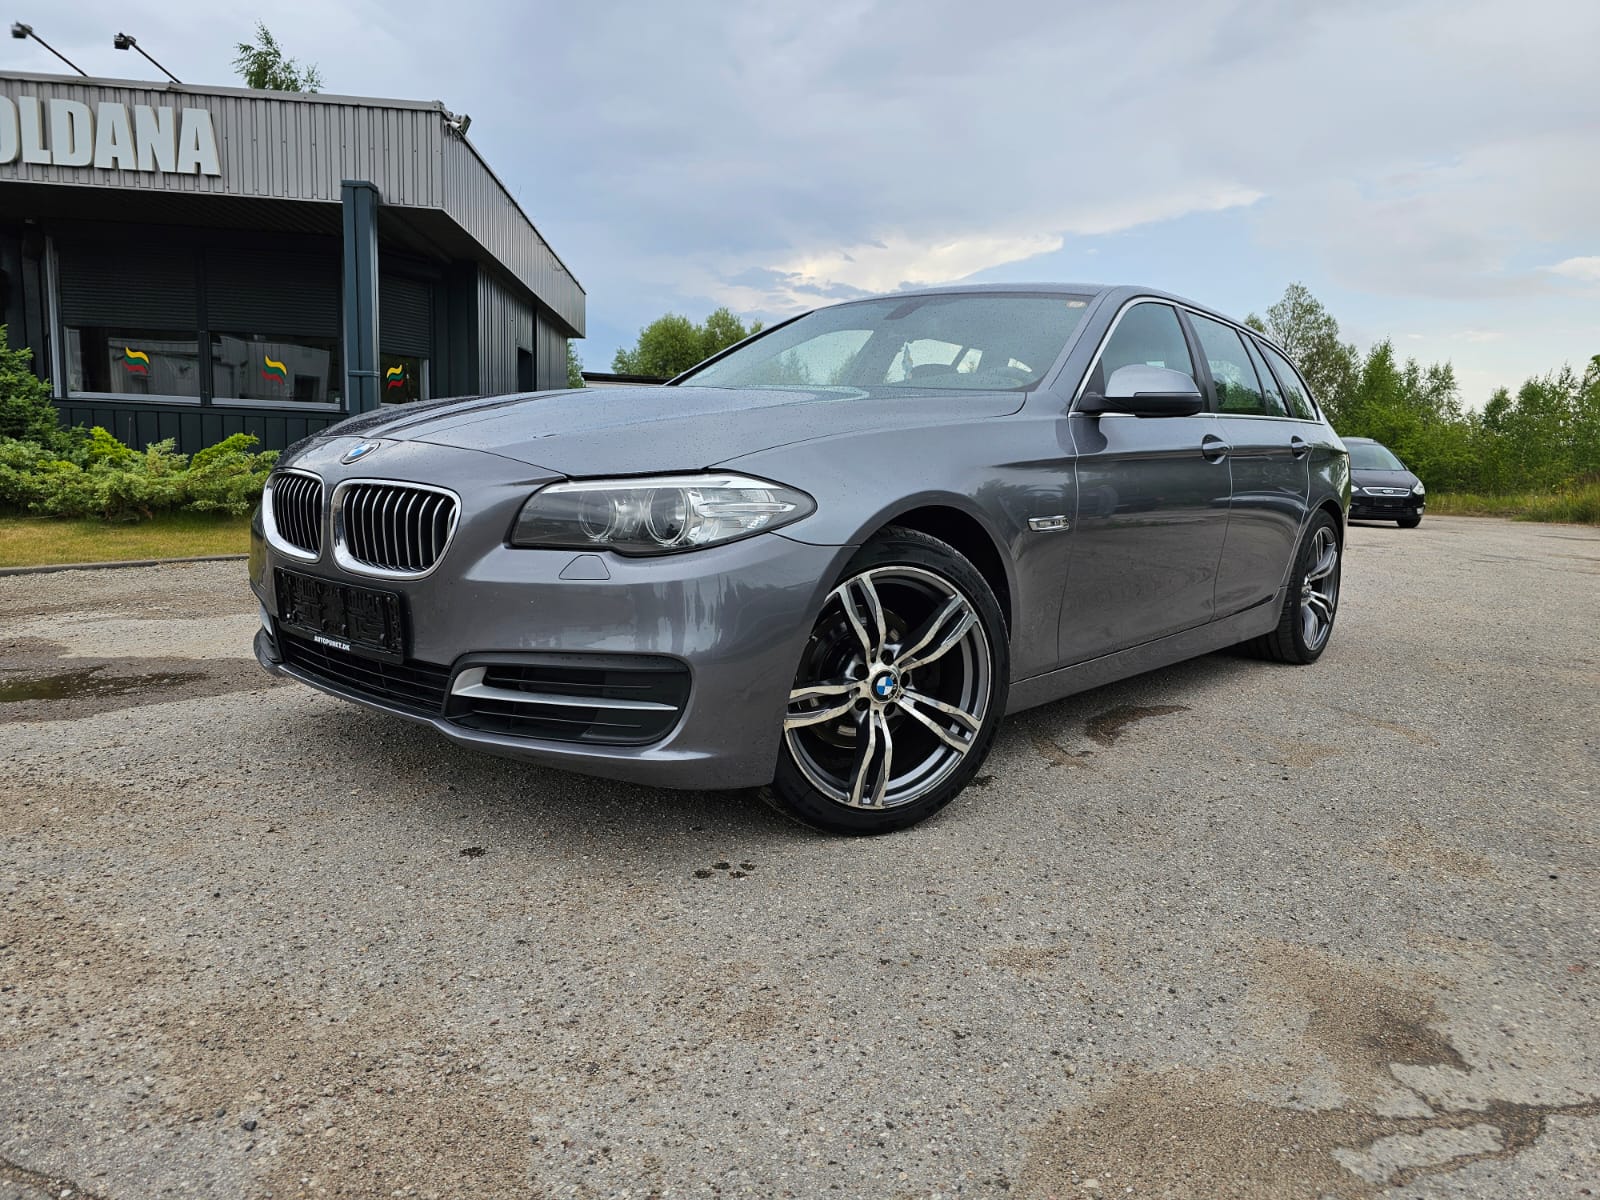 BMW 520, 2.0 l., wagon, 2013-08/naudoti automobiliai/Roldana